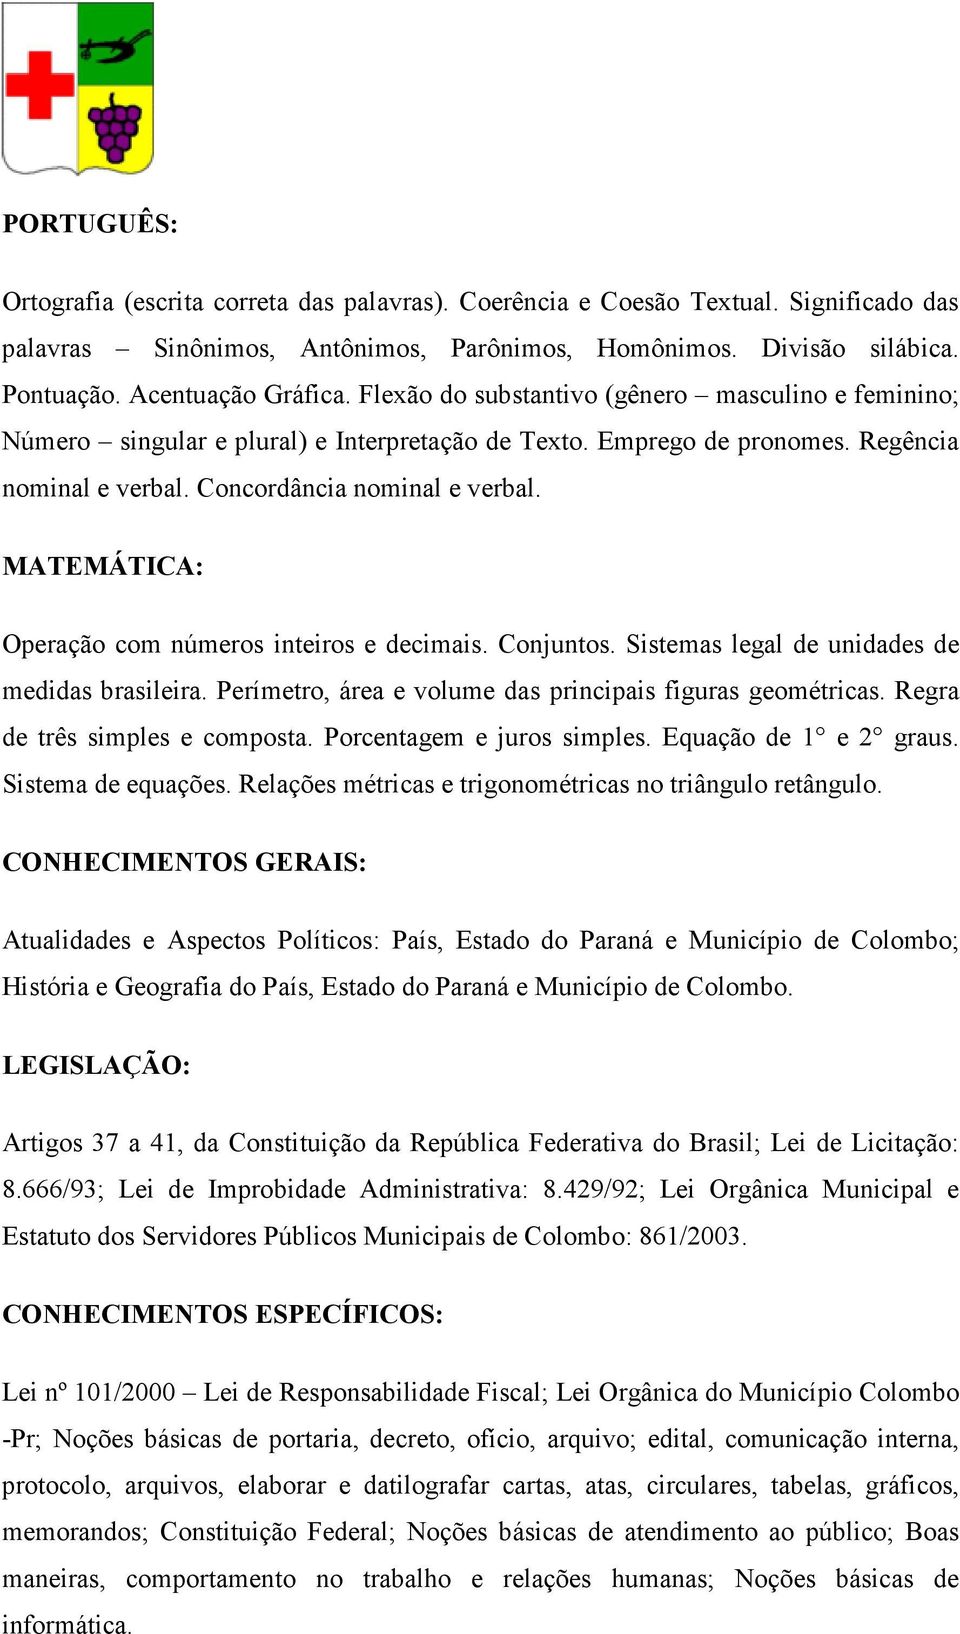 MATEMÁTICA: Operação com números inteiros e decimais. Conjuntos. Sistemas legal de unidades de medidas brasileira. Perímetro, área e volume das principais figuras geométricas.